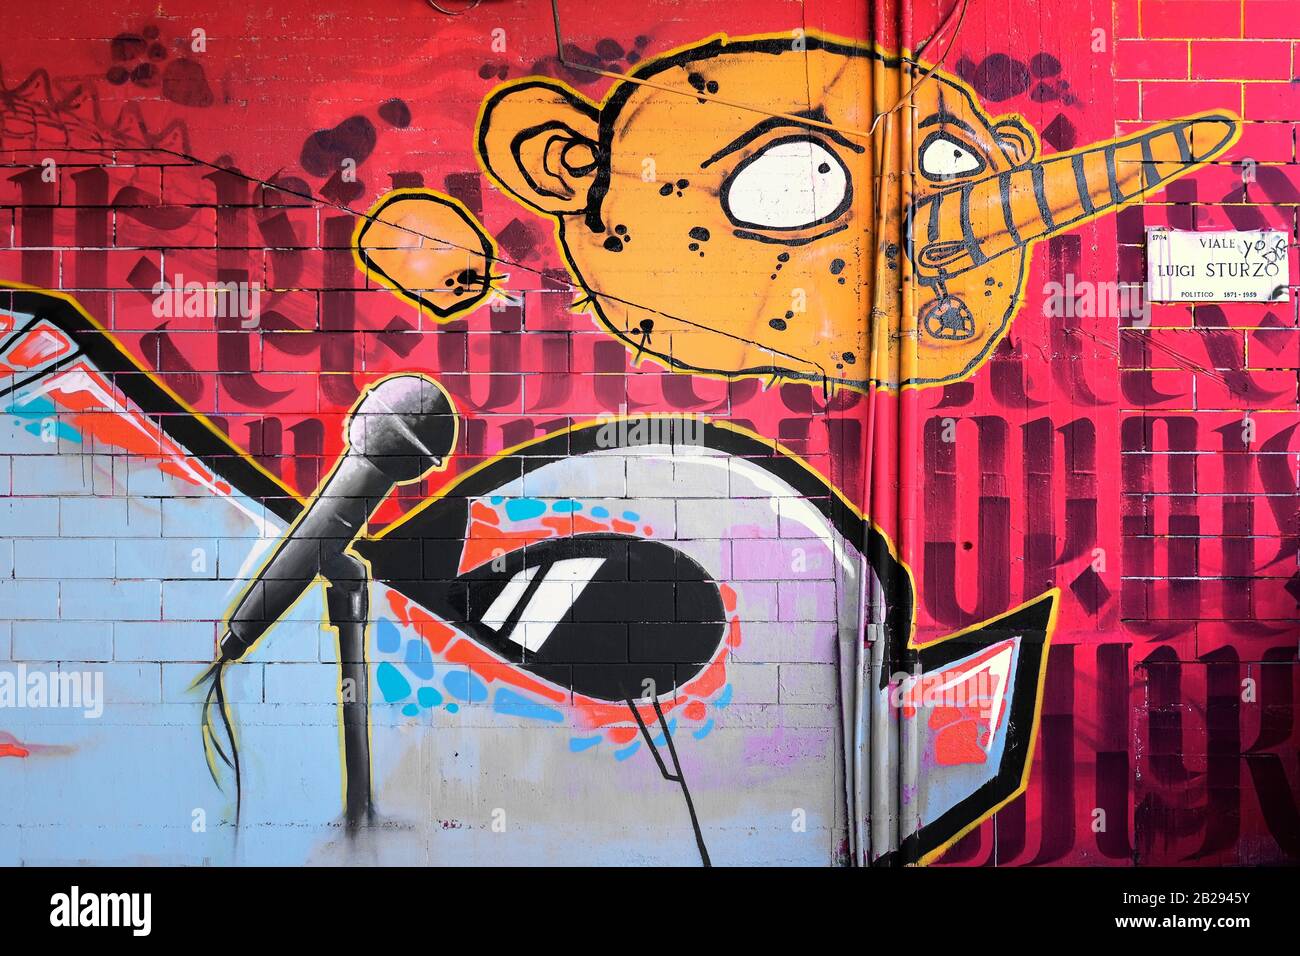 Moderne Graffiti in Der Via Sturzo, Mailand, Italien, die die Karikatur eines menschlichen Gesichts mit einer großen Nase und einem Alien mit einem Standmikrofon darstellen Stockfoto